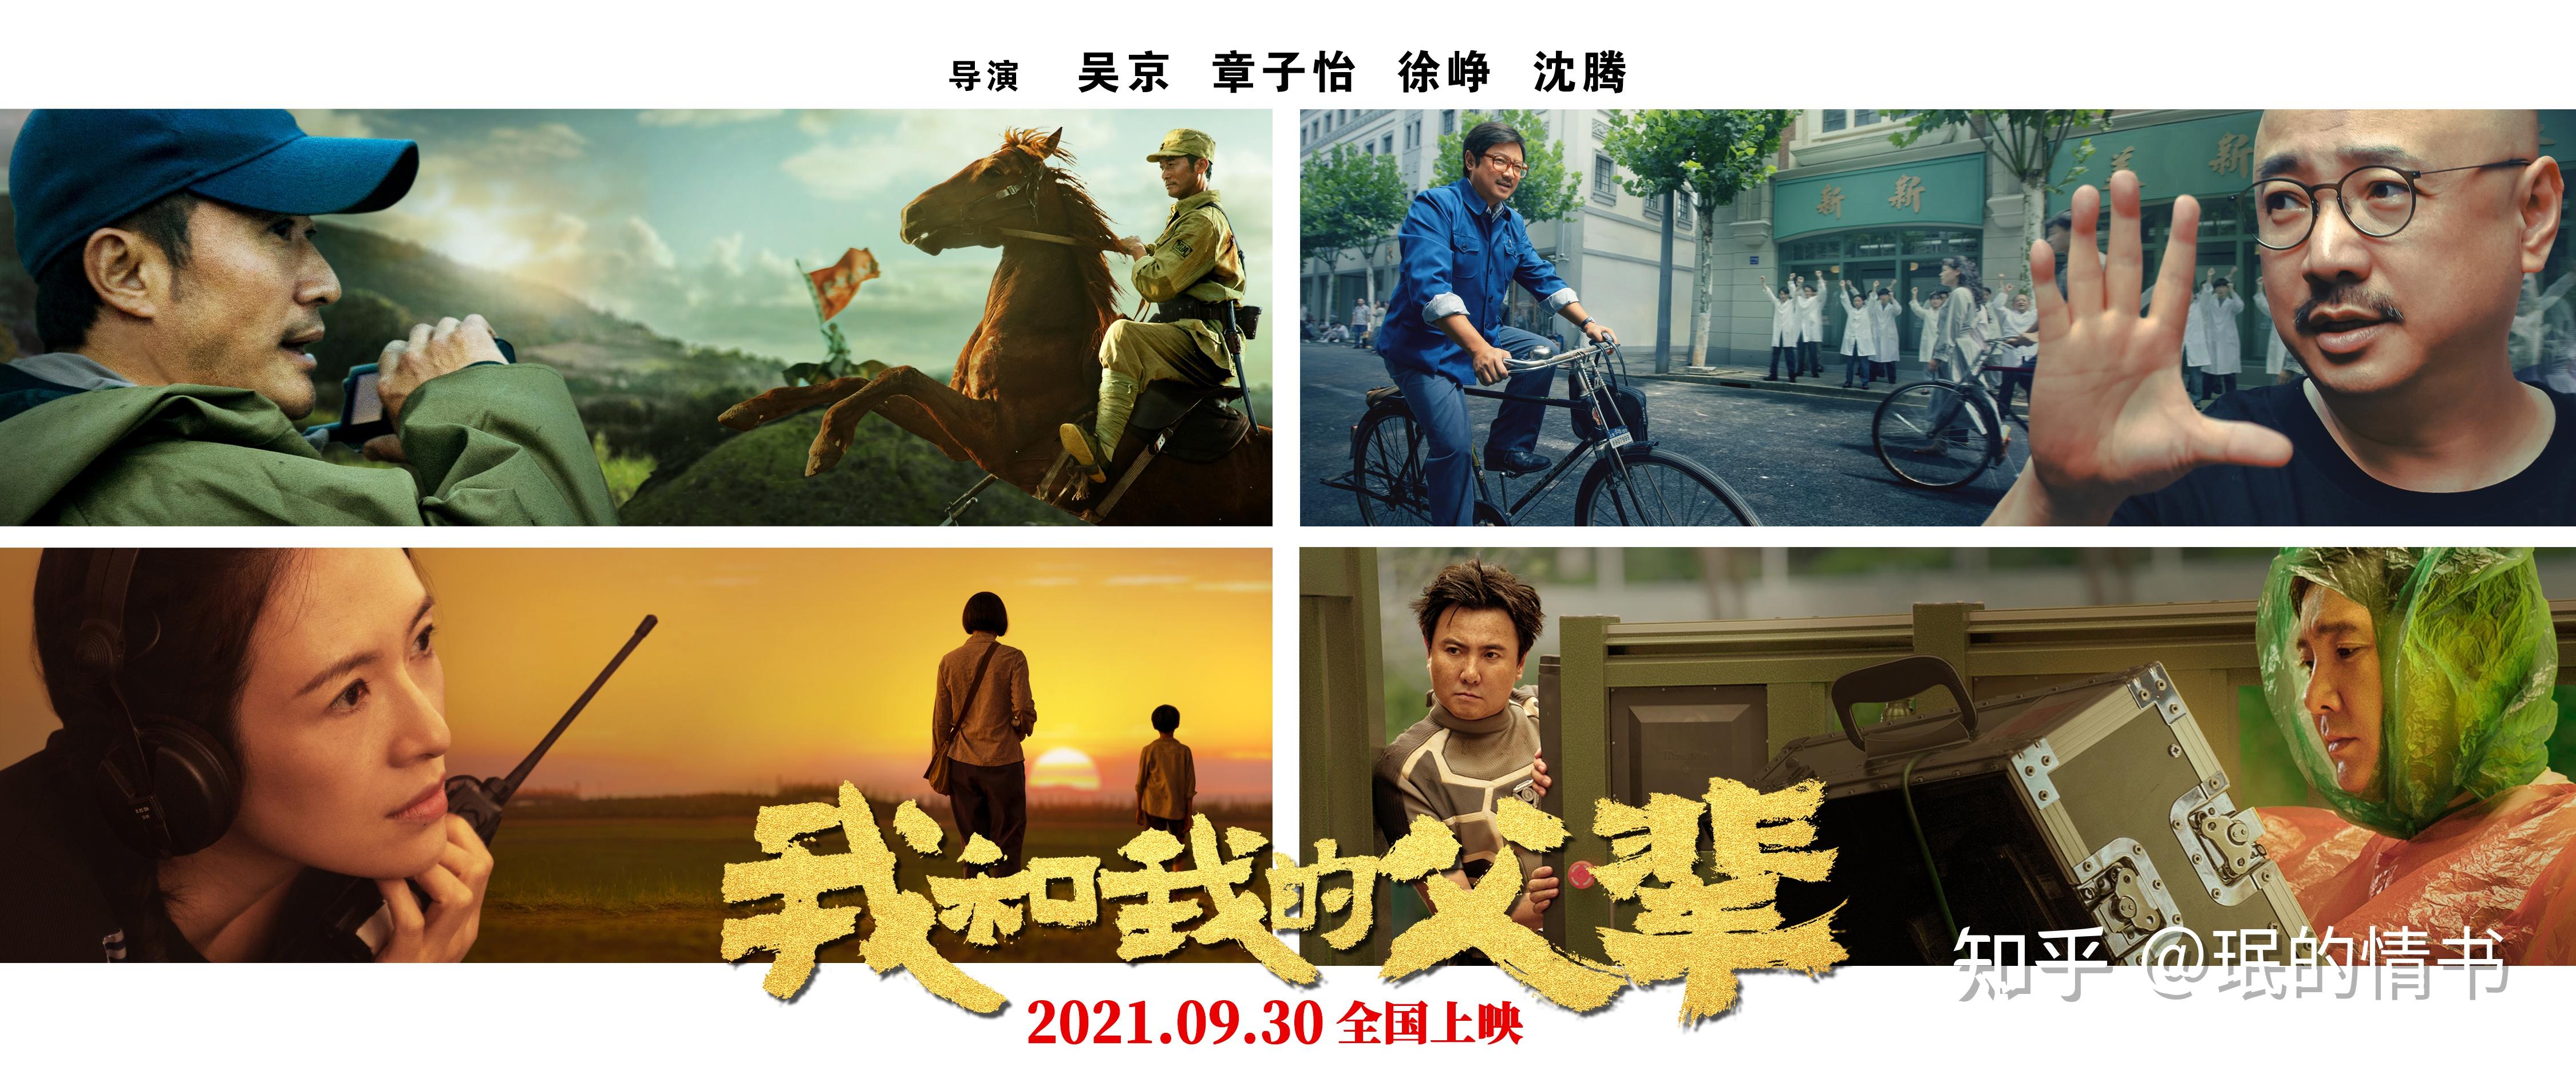 《我和我的父辈》拼盘电影讲好中国故事! 文/王珉